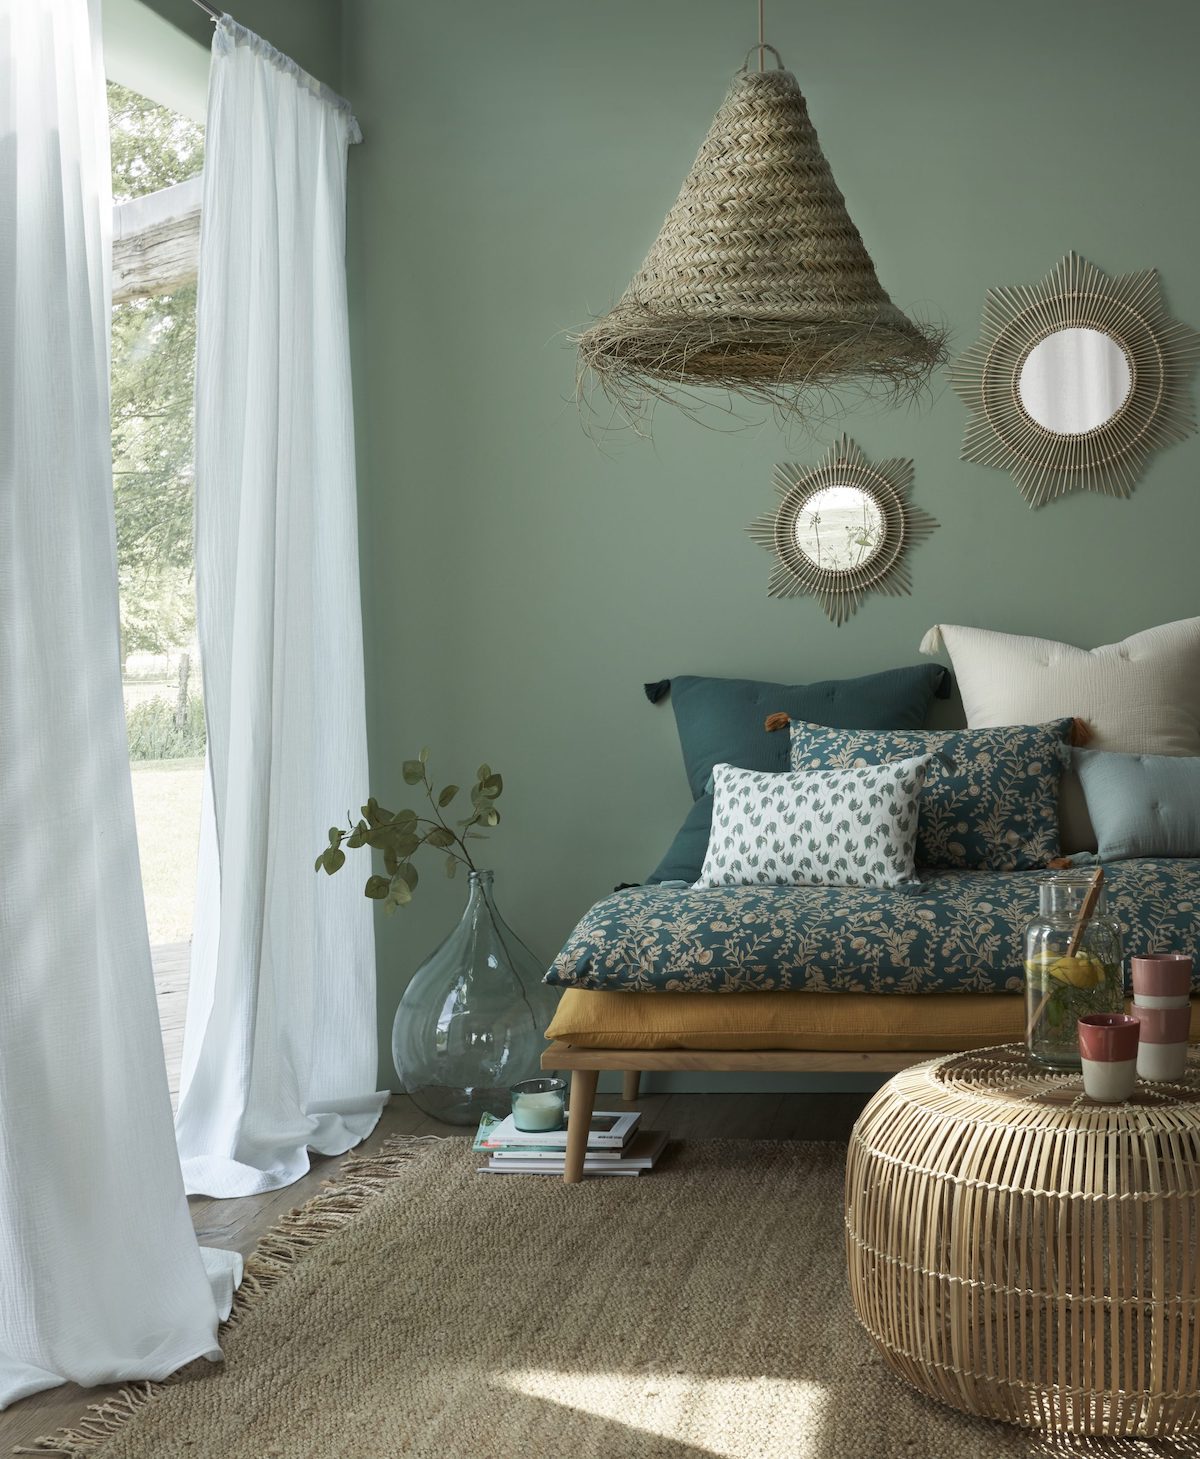 salon bohème nature mur peinture vert de gris suspension paille canapé daybed futon couvre lit liberty motif fleur